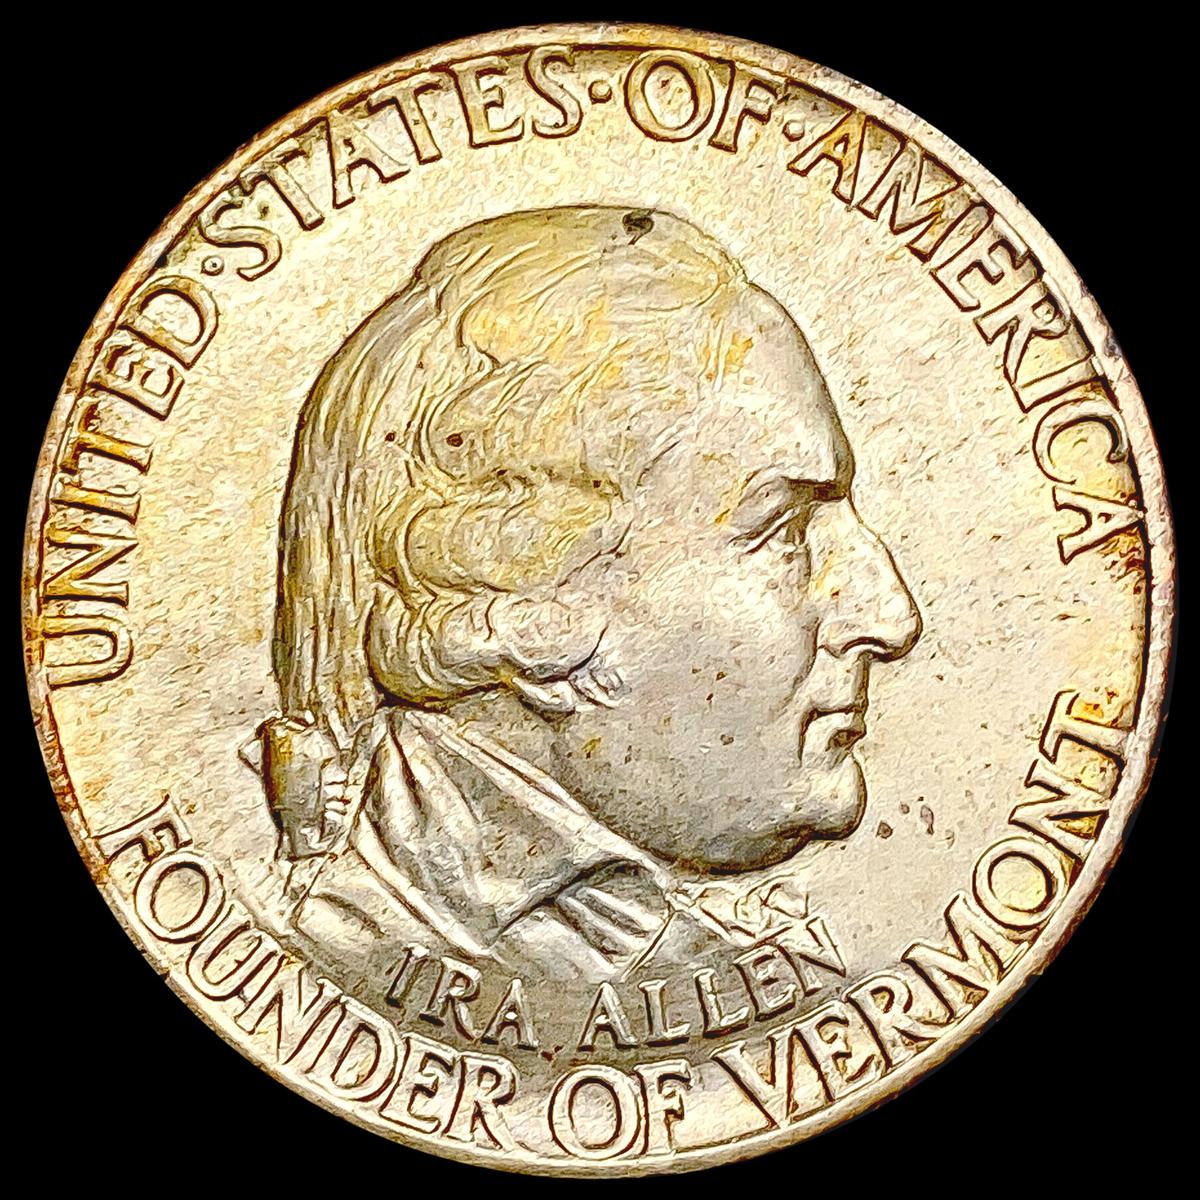 1927 Vermont Half Dollar CHOICE BU